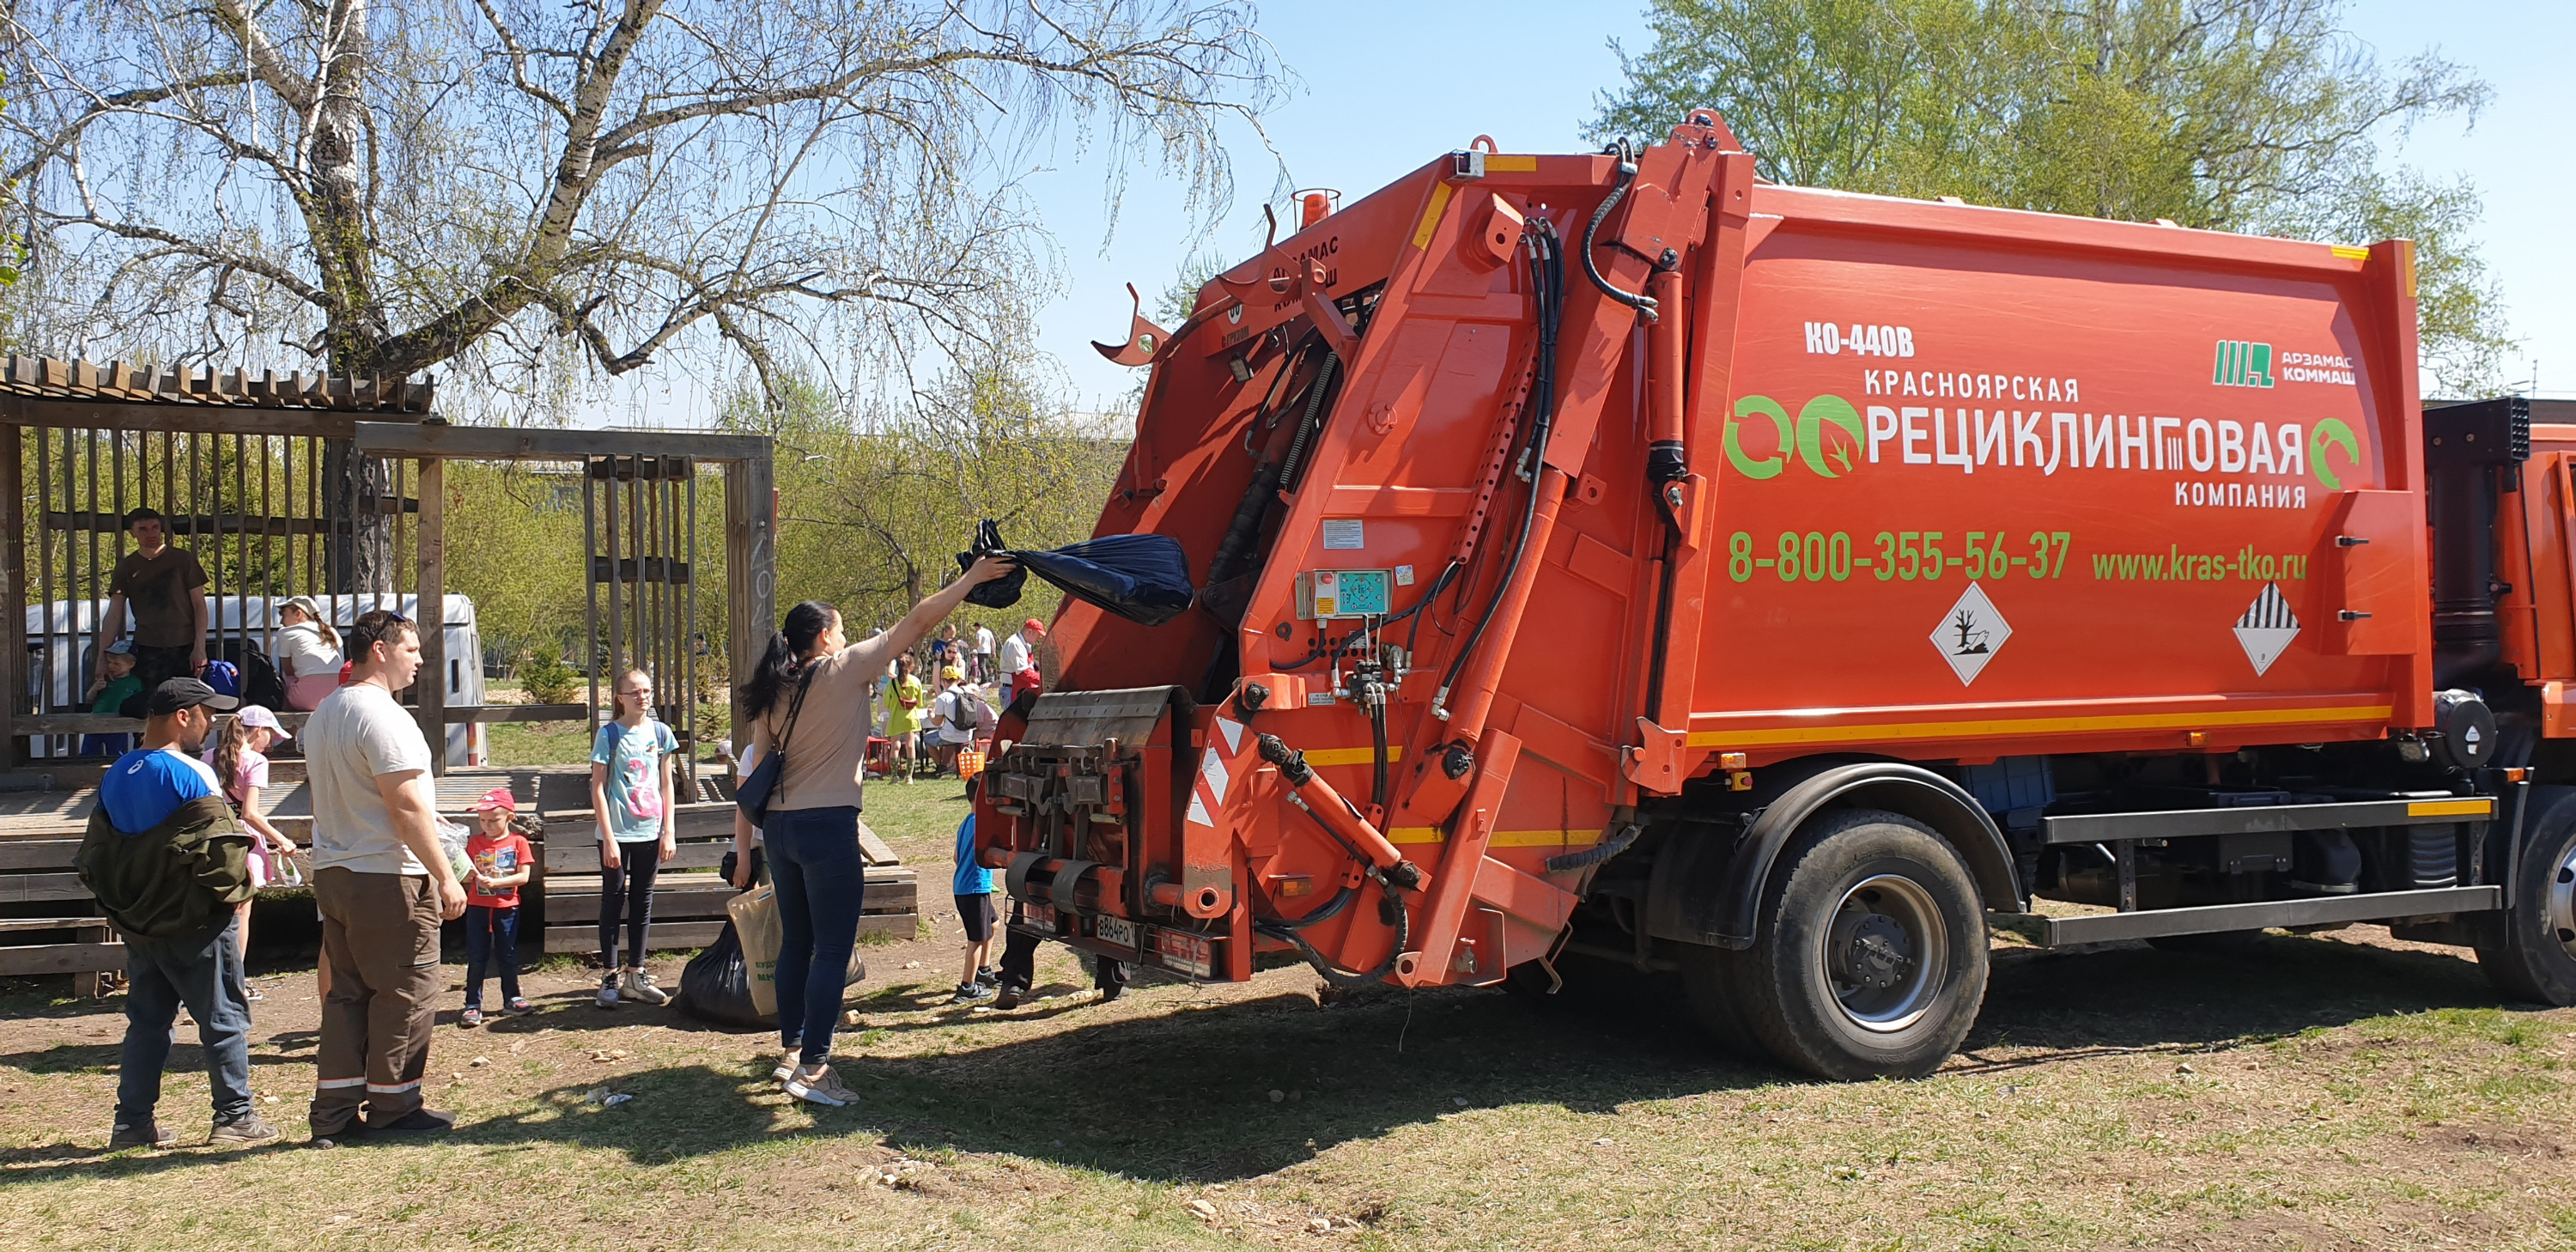 «Красноярская рециклинговая компания» традиционно поддерживает экологические мероприятия города